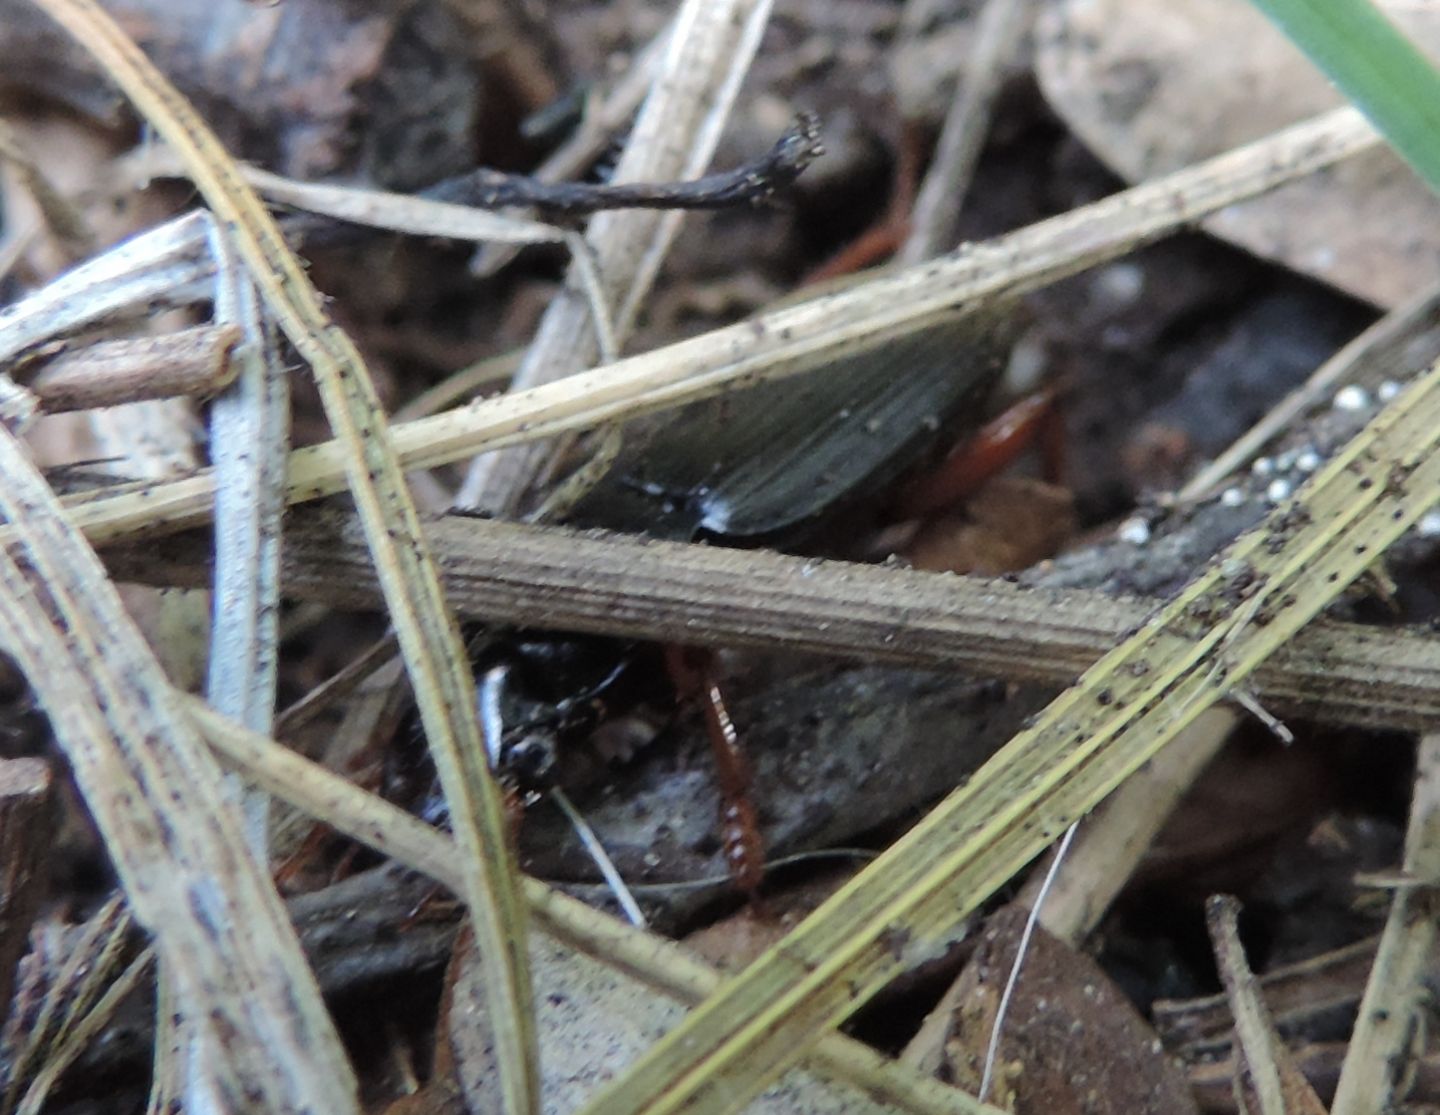 Carabidae: Ophonus sp.?  S, Ophonus stictus